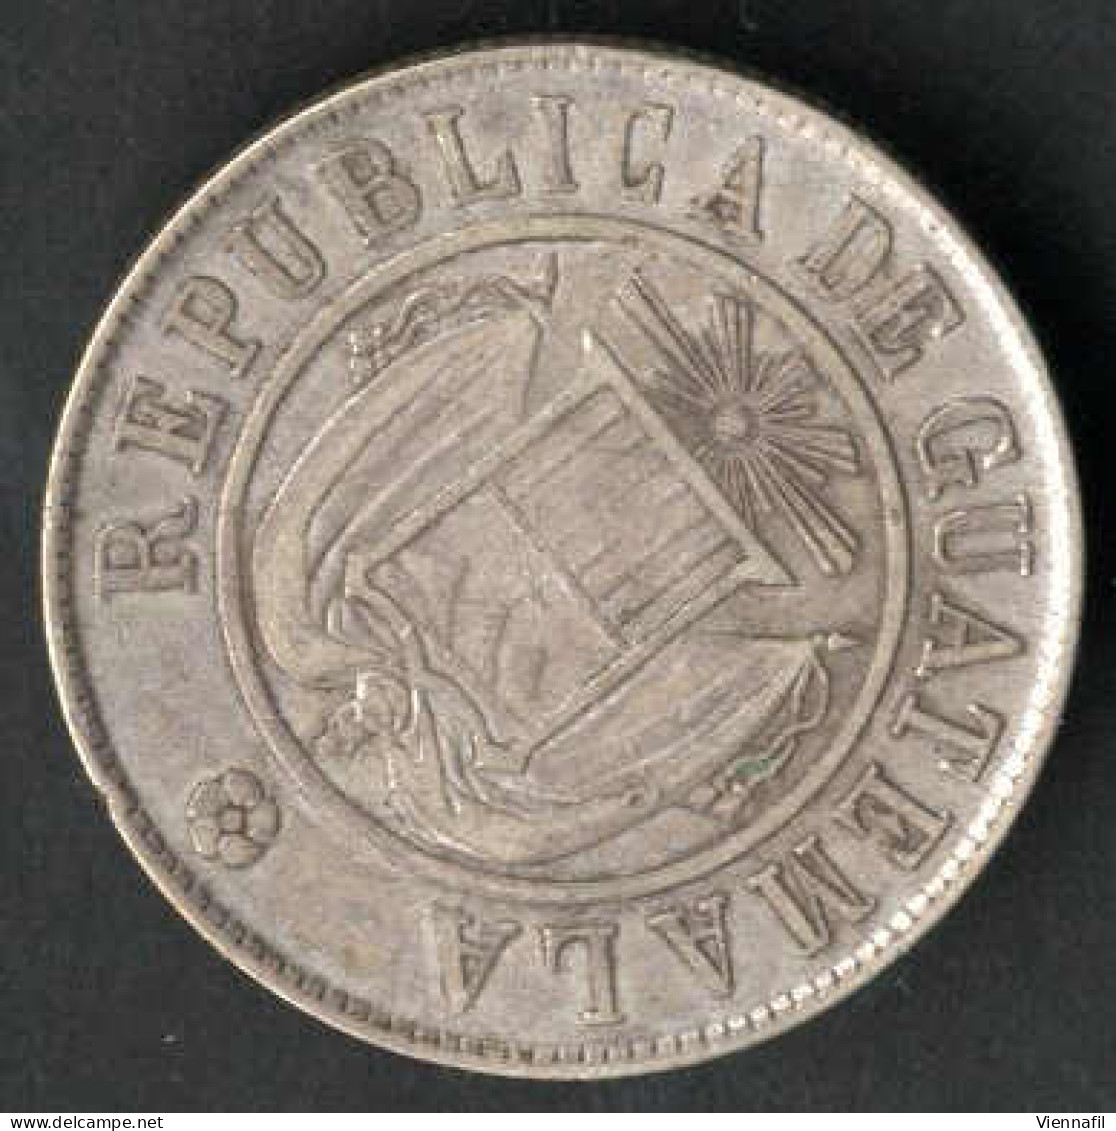 50 Centavos, 1 Peso, 1870 und 1963, Lot mit vier Silbermünzen, sehr schön bis unz., Feingewicht 48 Gr., KM 190.1, 195, 2